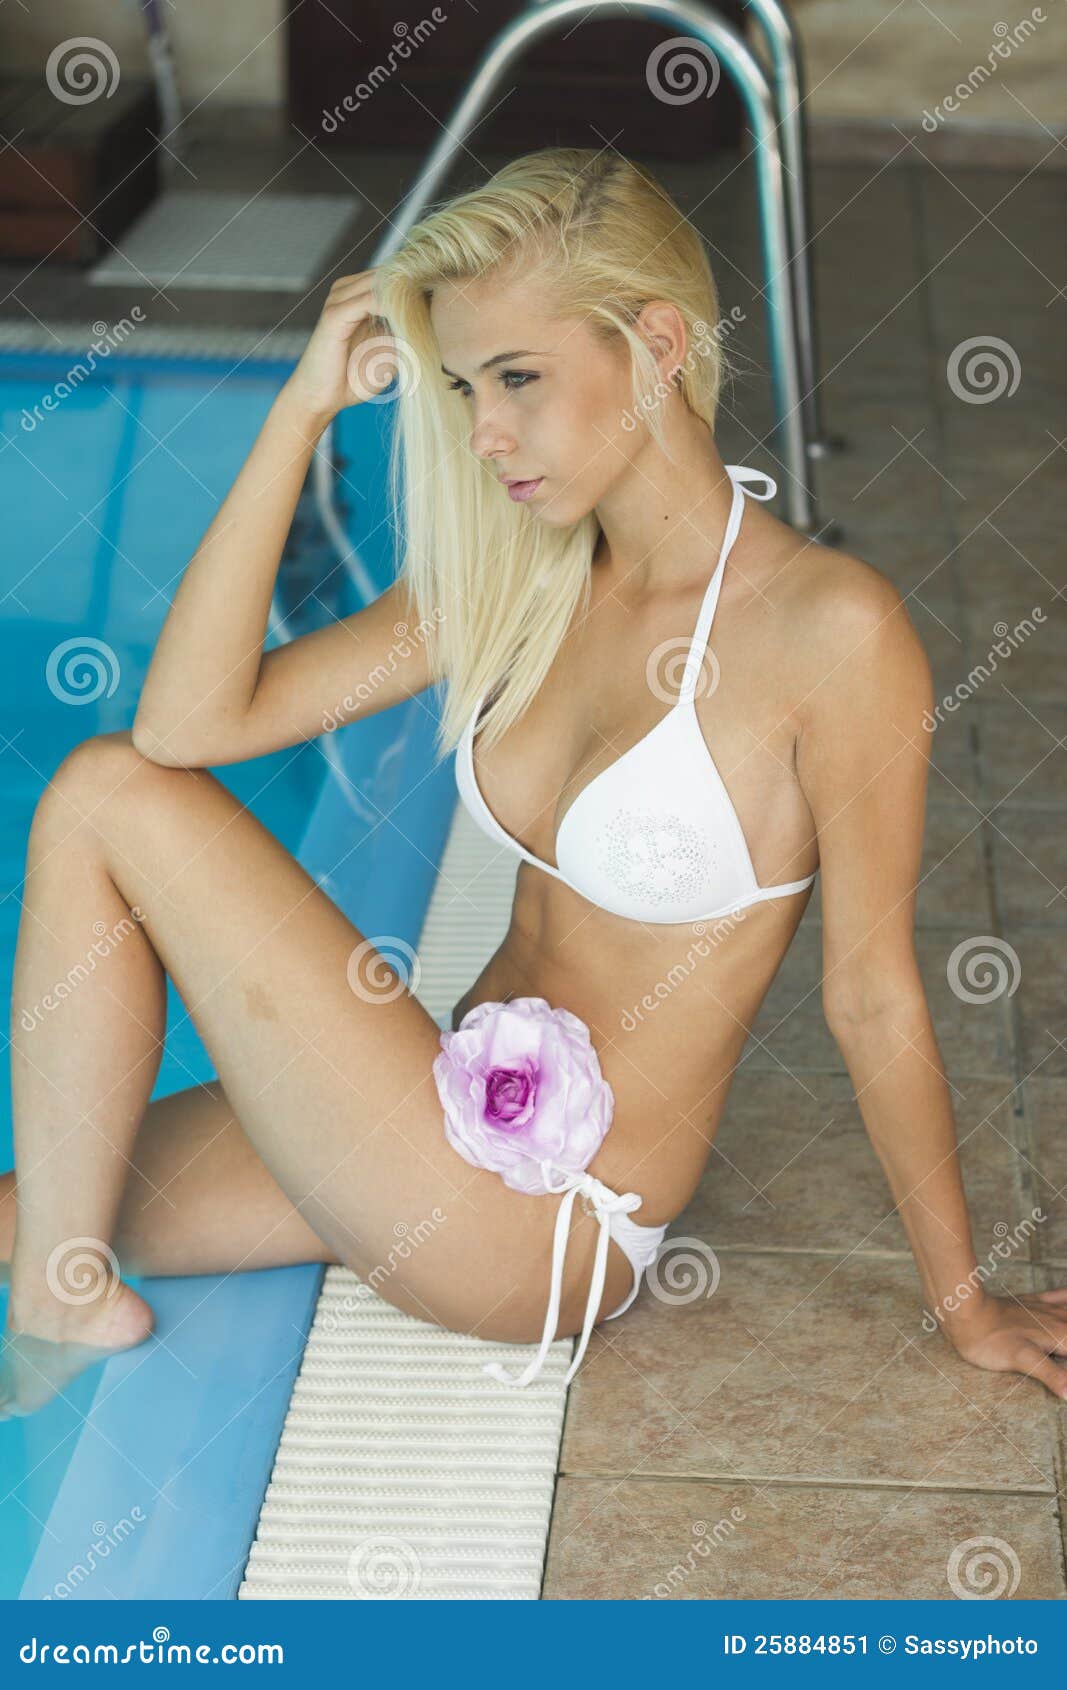 Hot Young Blond Sex handjob pmv